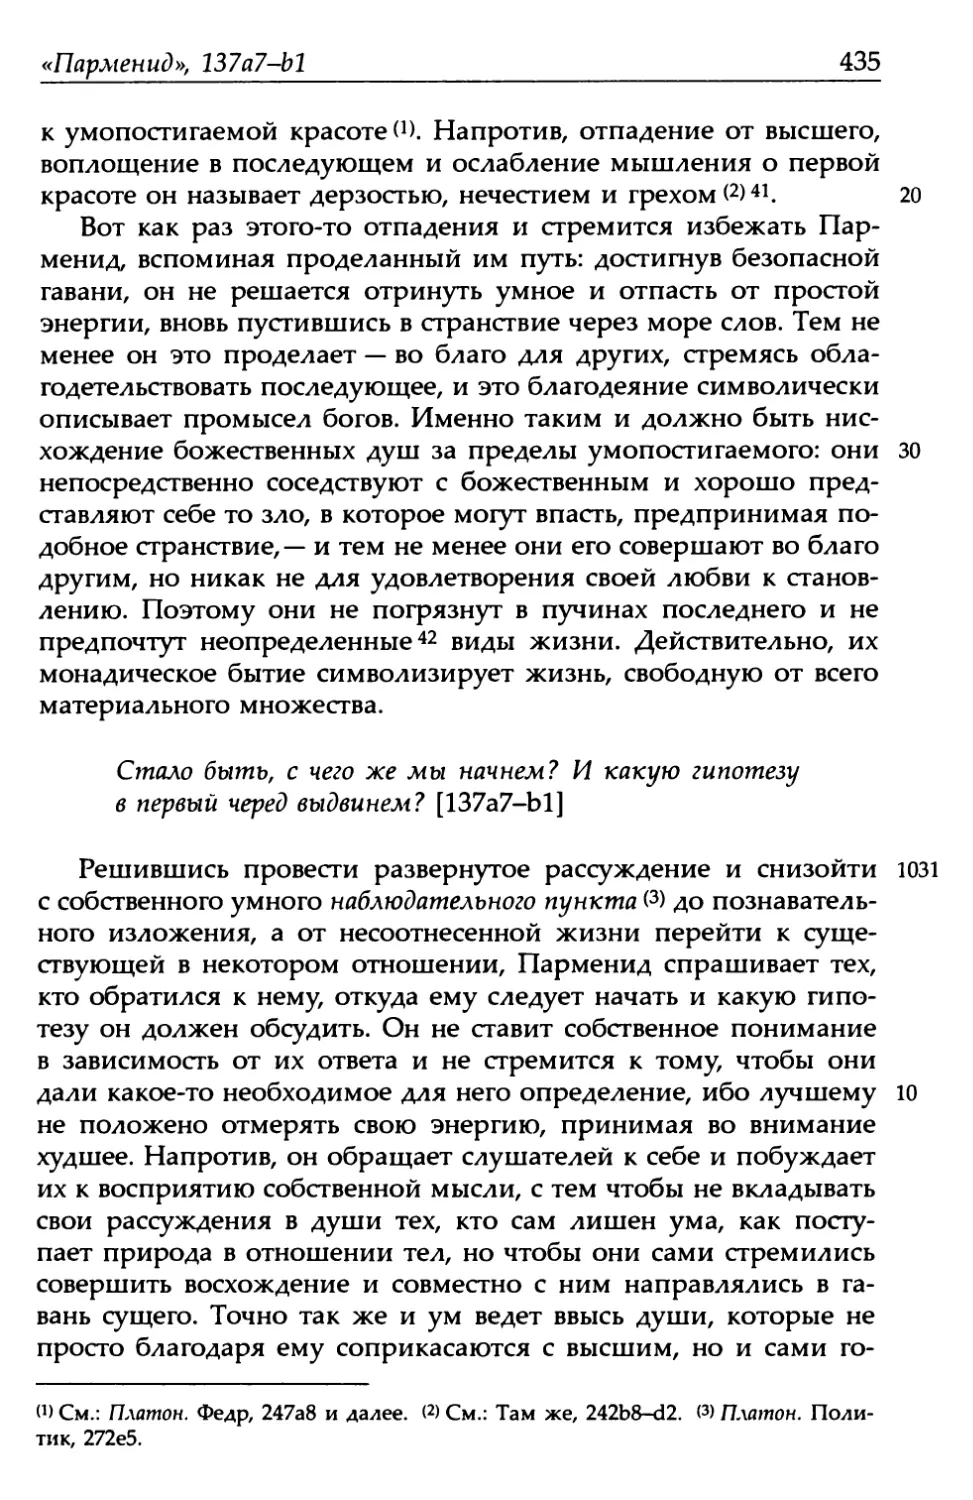 «Парменид», 137а7-b1